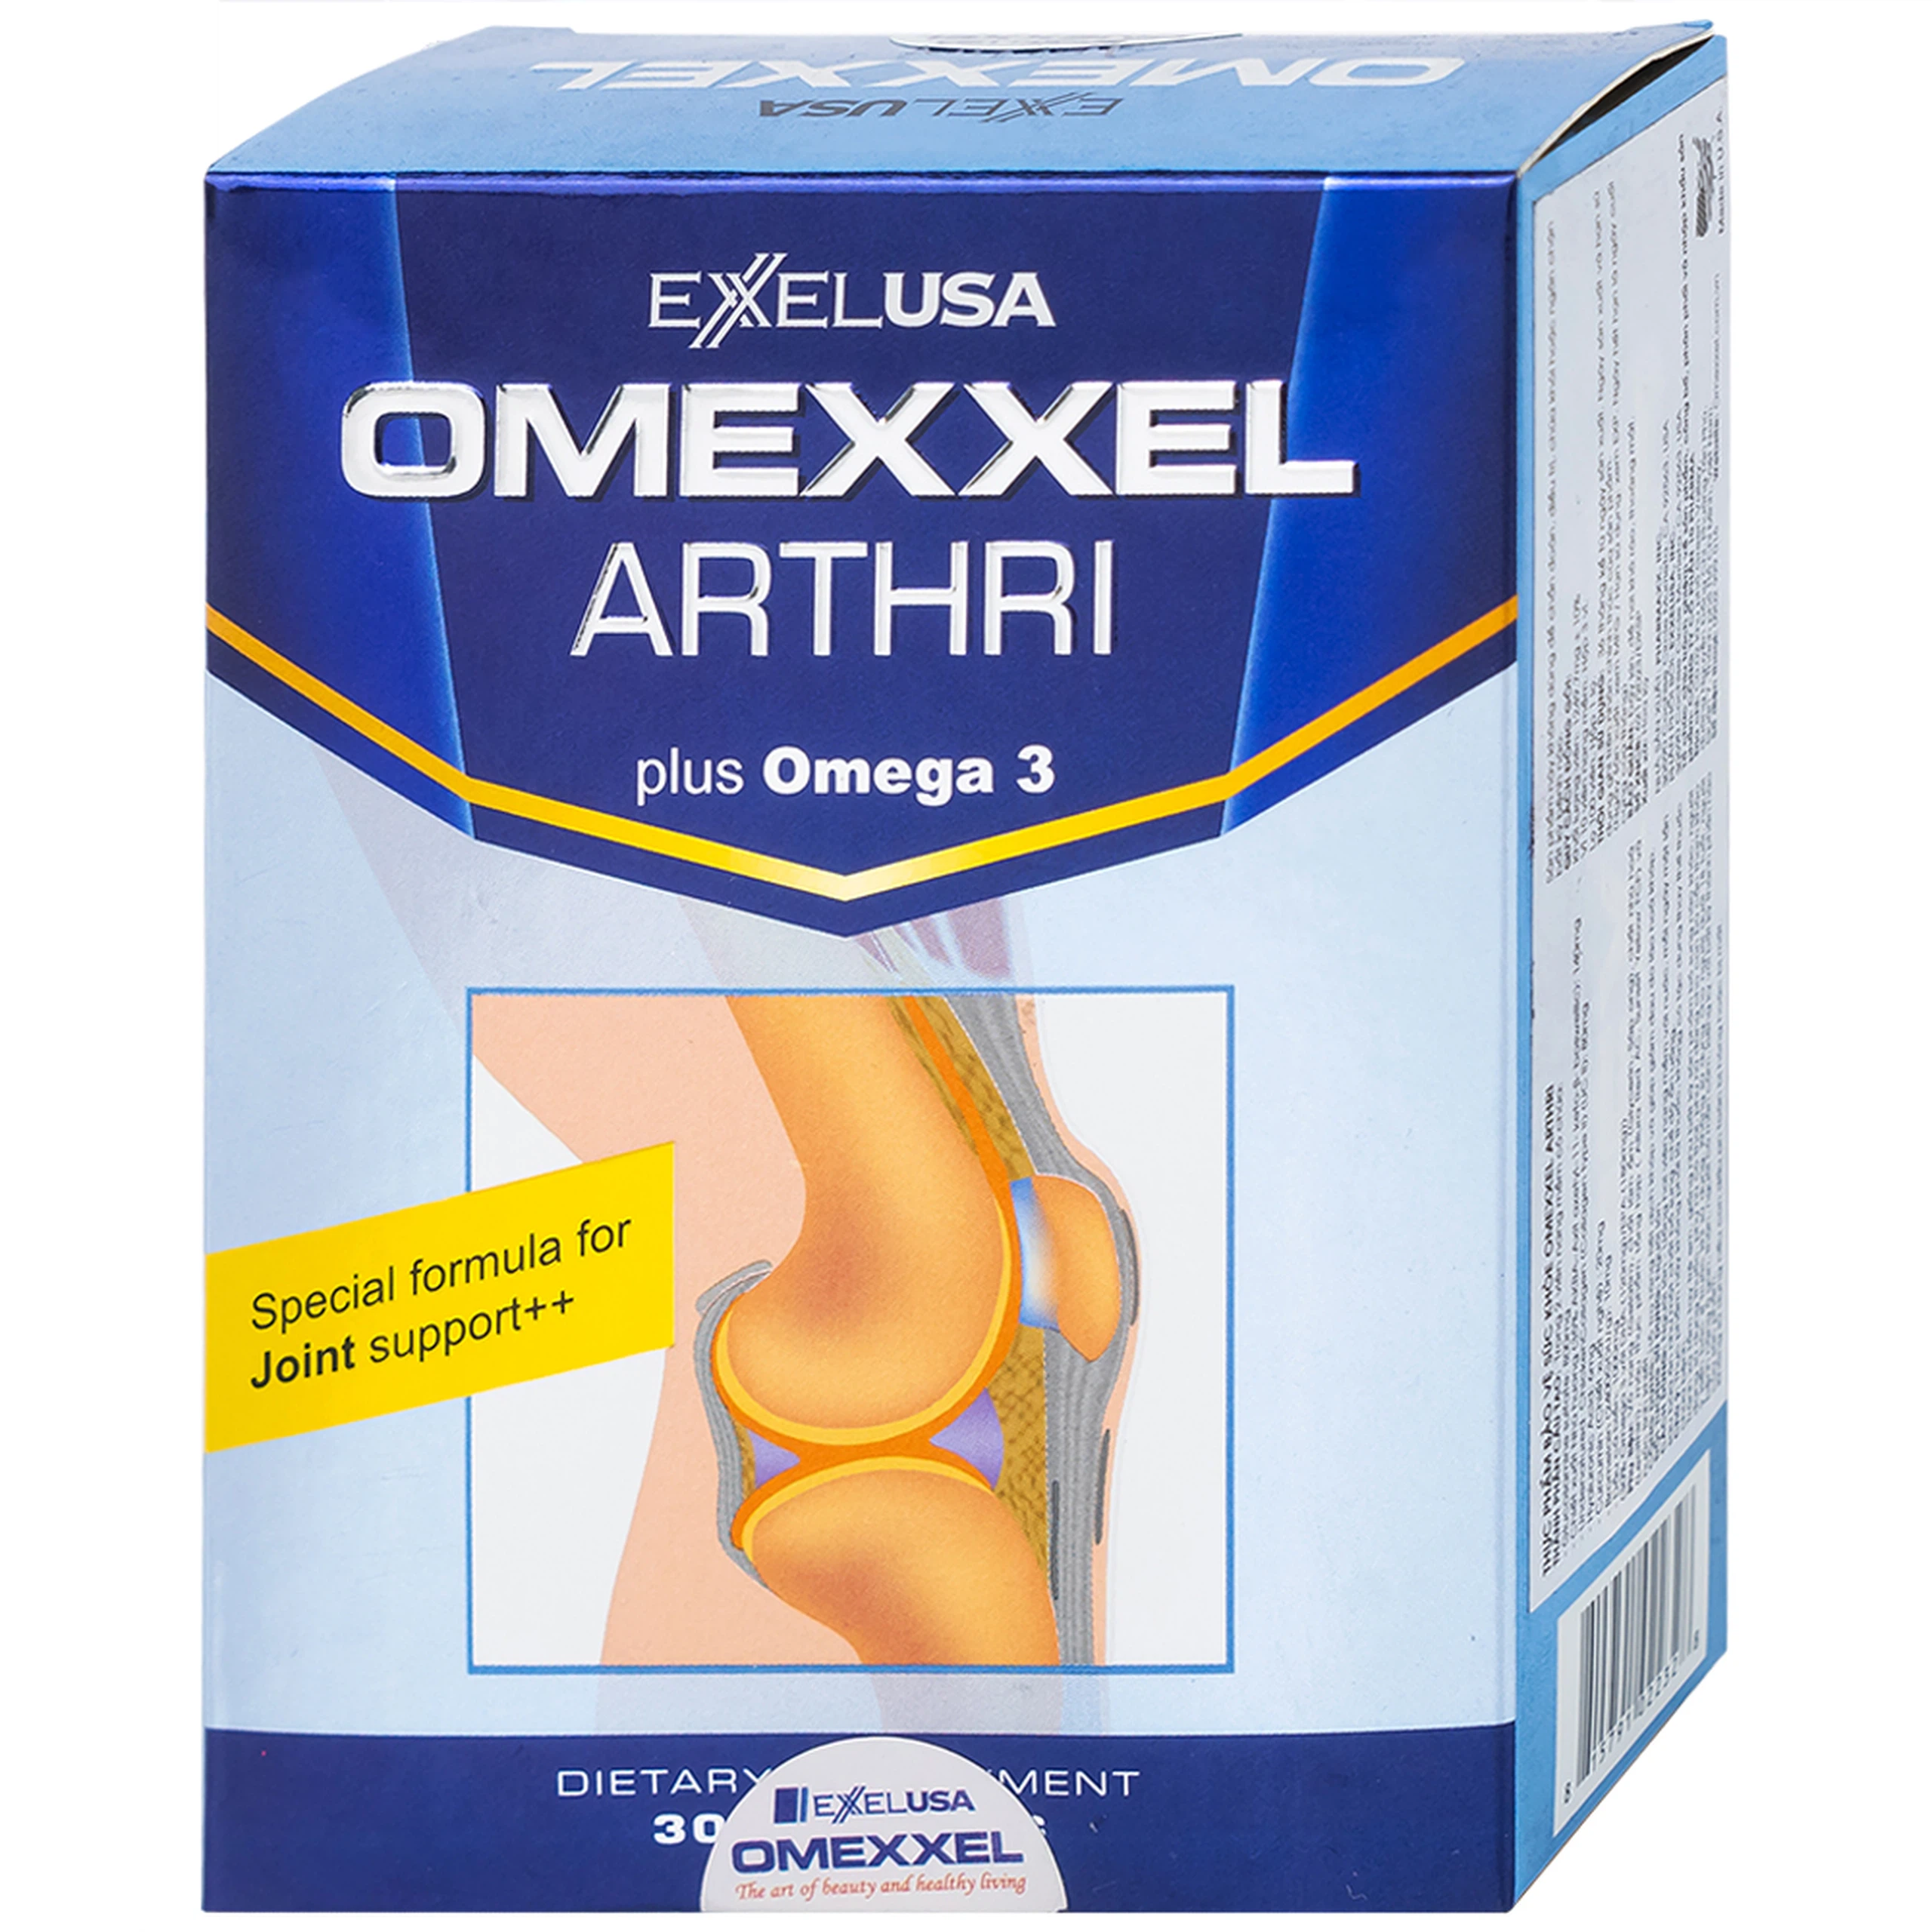 Viên nang mềm Omexxel Arthri hỗ trợ tăng tiết dịch khớp, giảm đau do lão hóa khớp (3 vỉ x 10 viên)